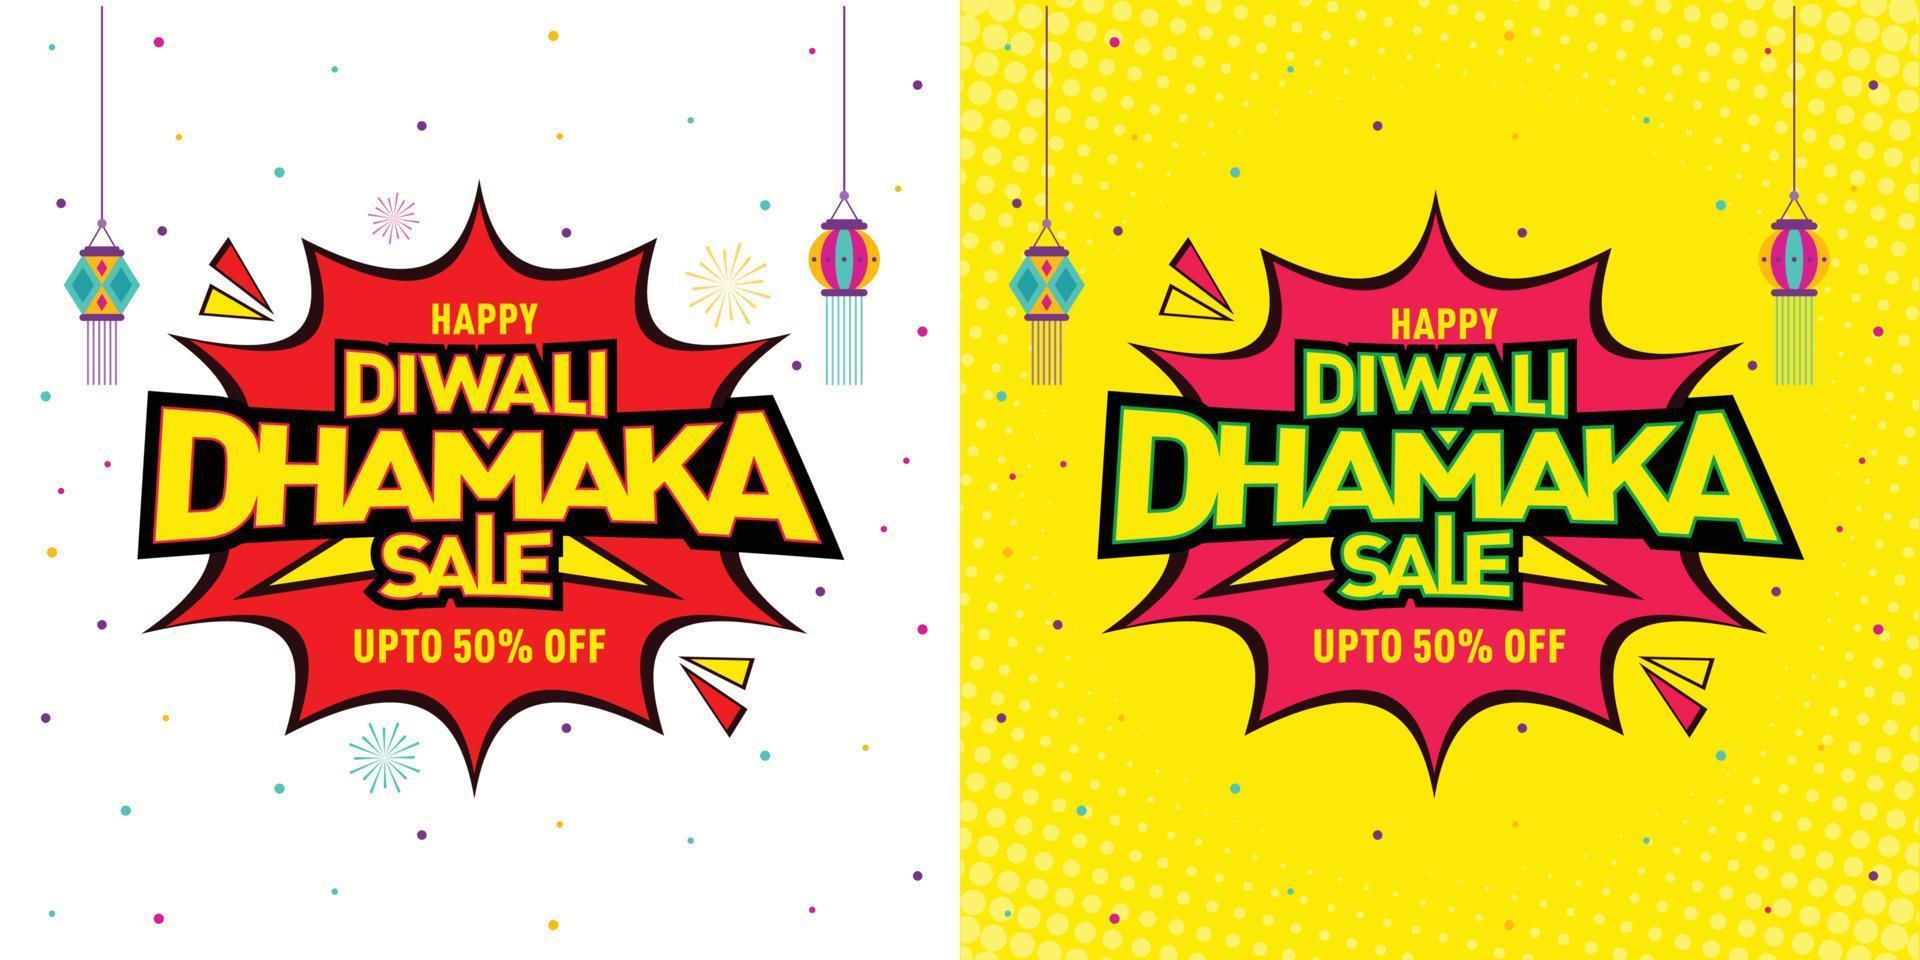 oferta de venda de diwali dhamaka modelo de diwali, banner, design de logotipo, lâmpada de diwali, pôster, unidade, etiqueta, cabeçalho da web, vetor, ilustração vetor